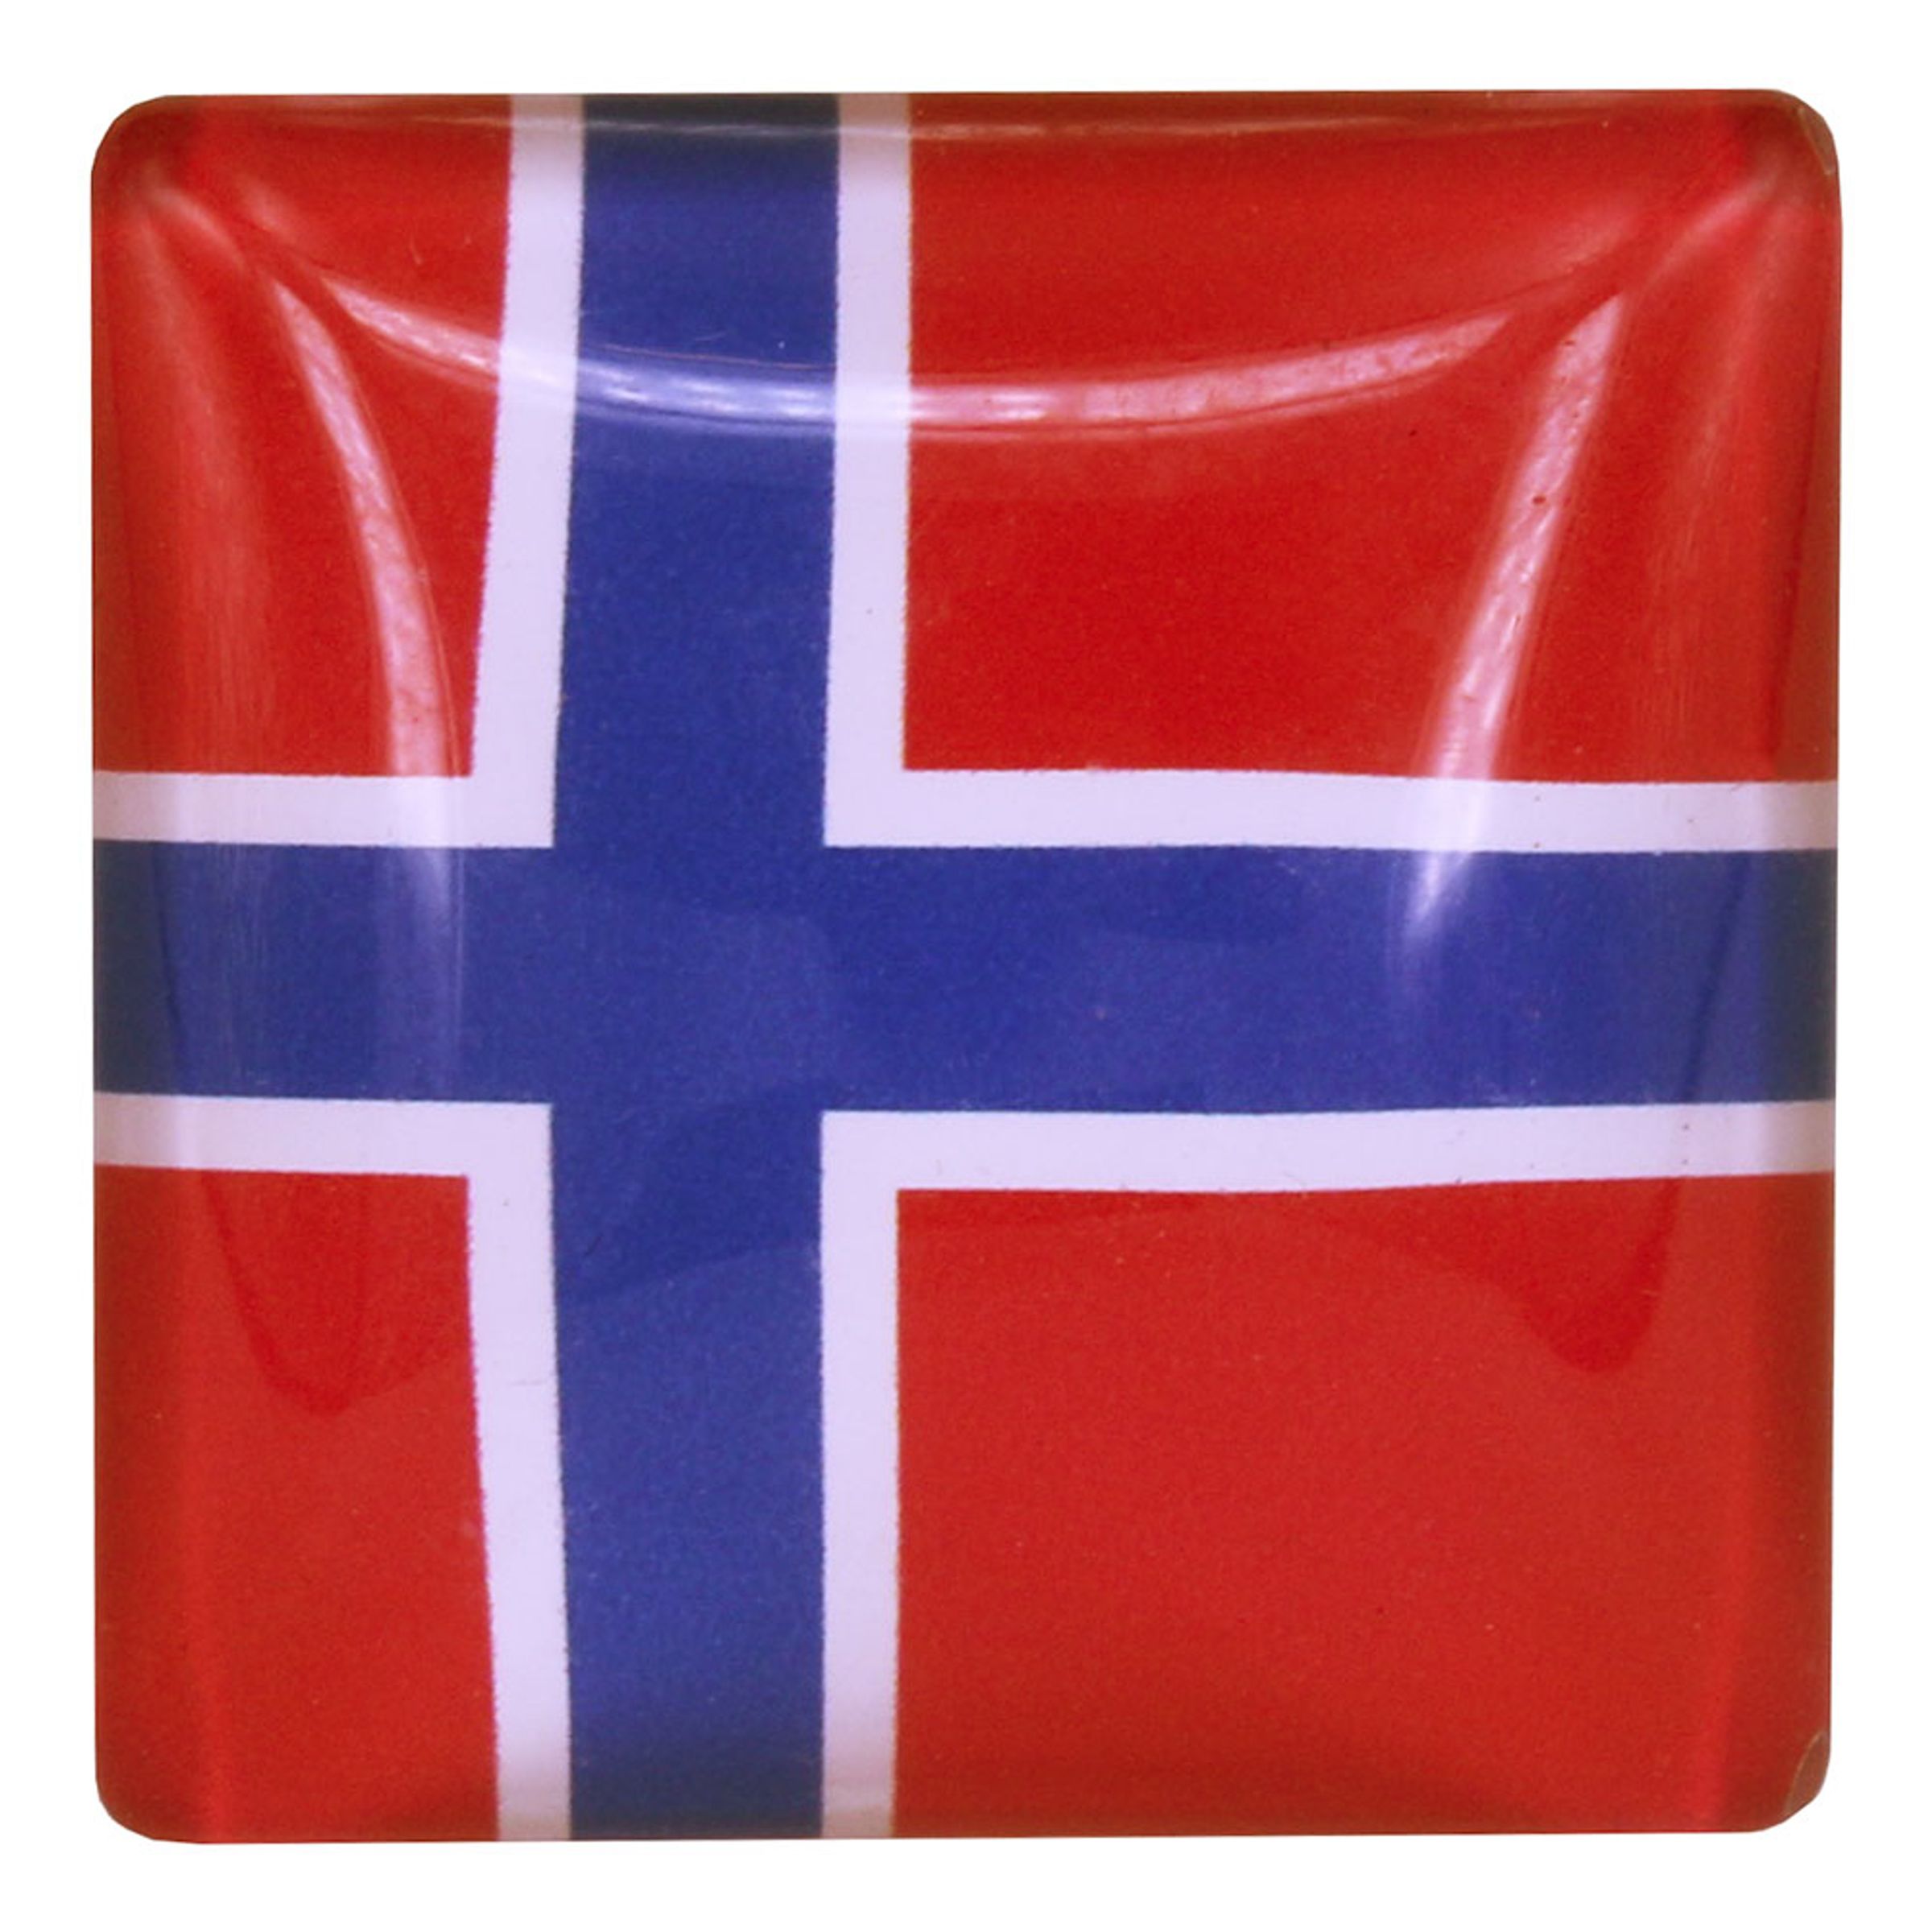 Magnet Flagga Sverige/Norge - Norge 1-pack